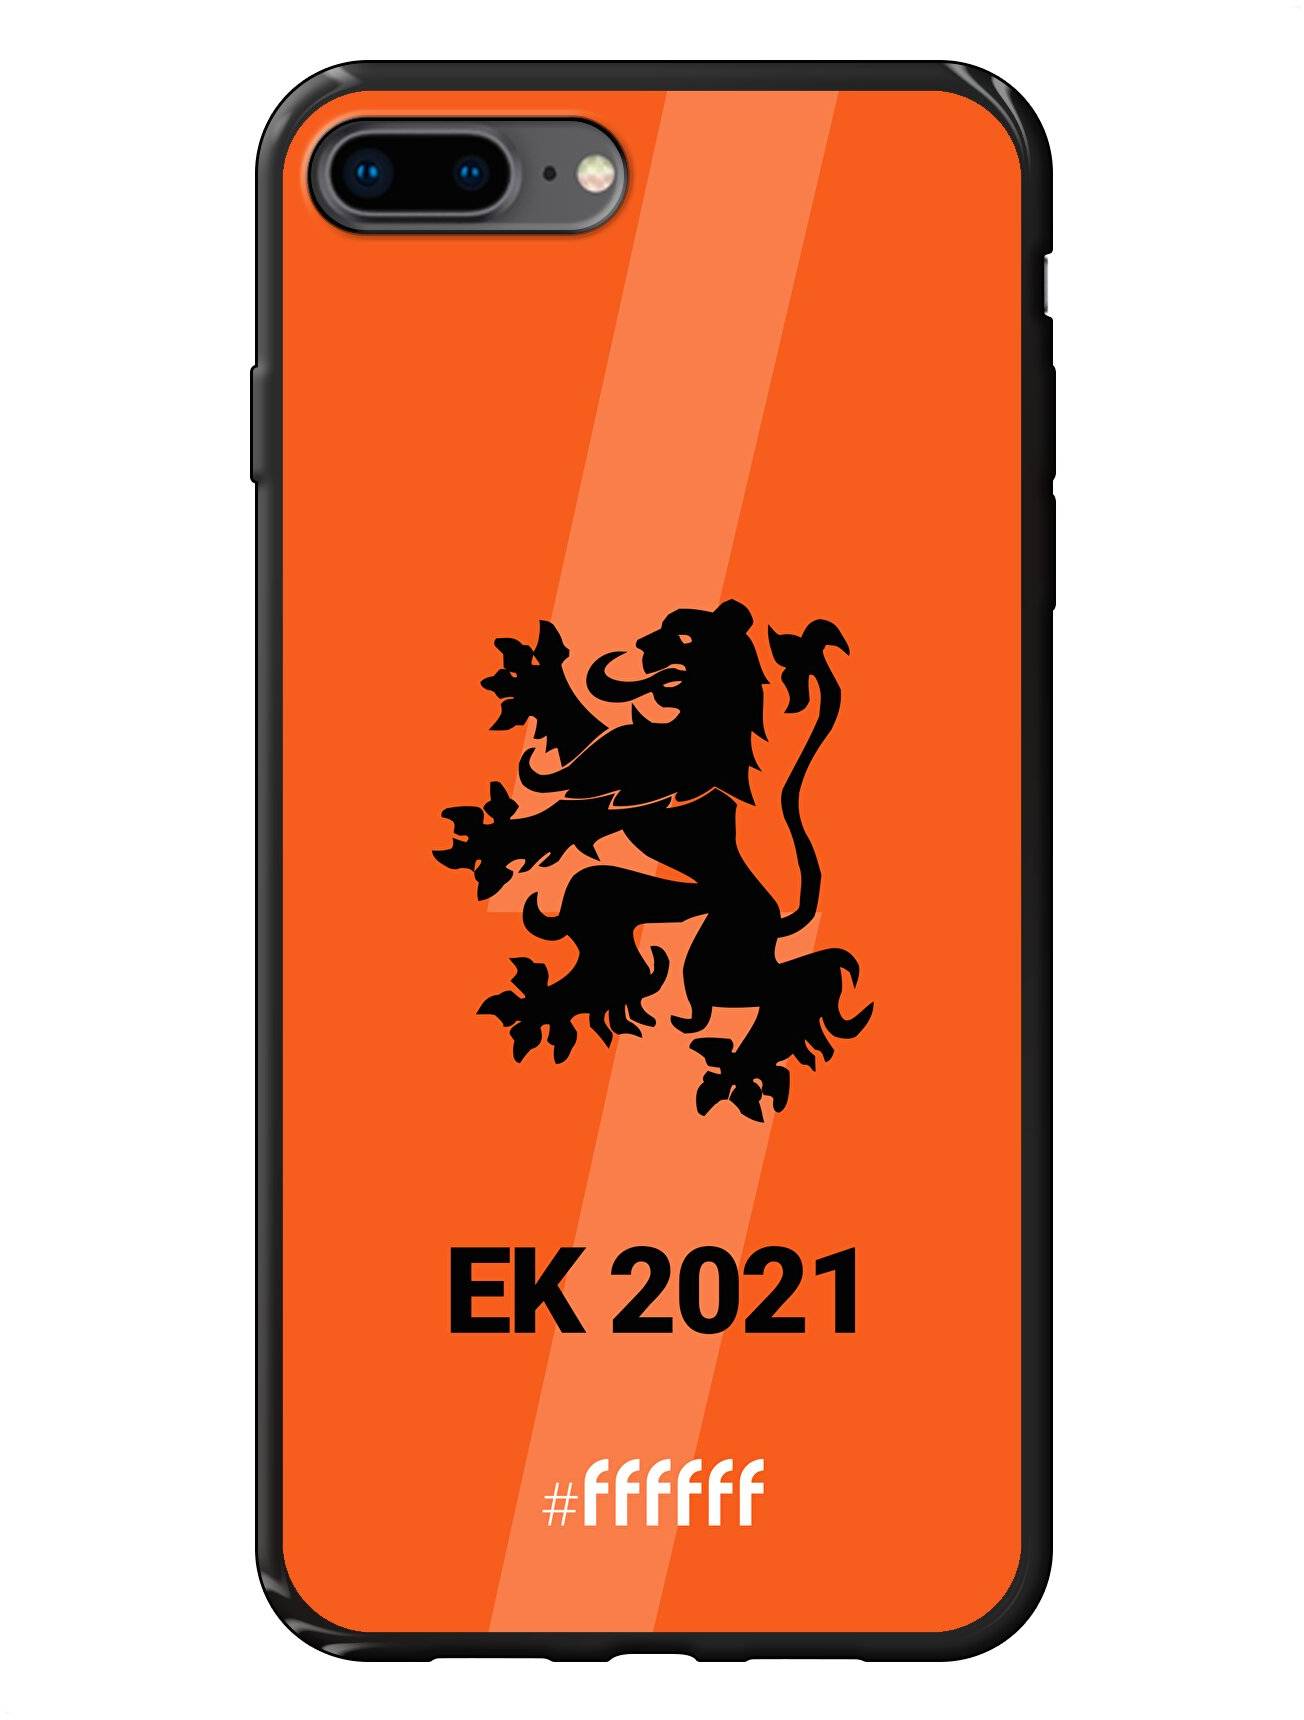 Nederlands Elftal - EK 2021 iPhone 7 Plus